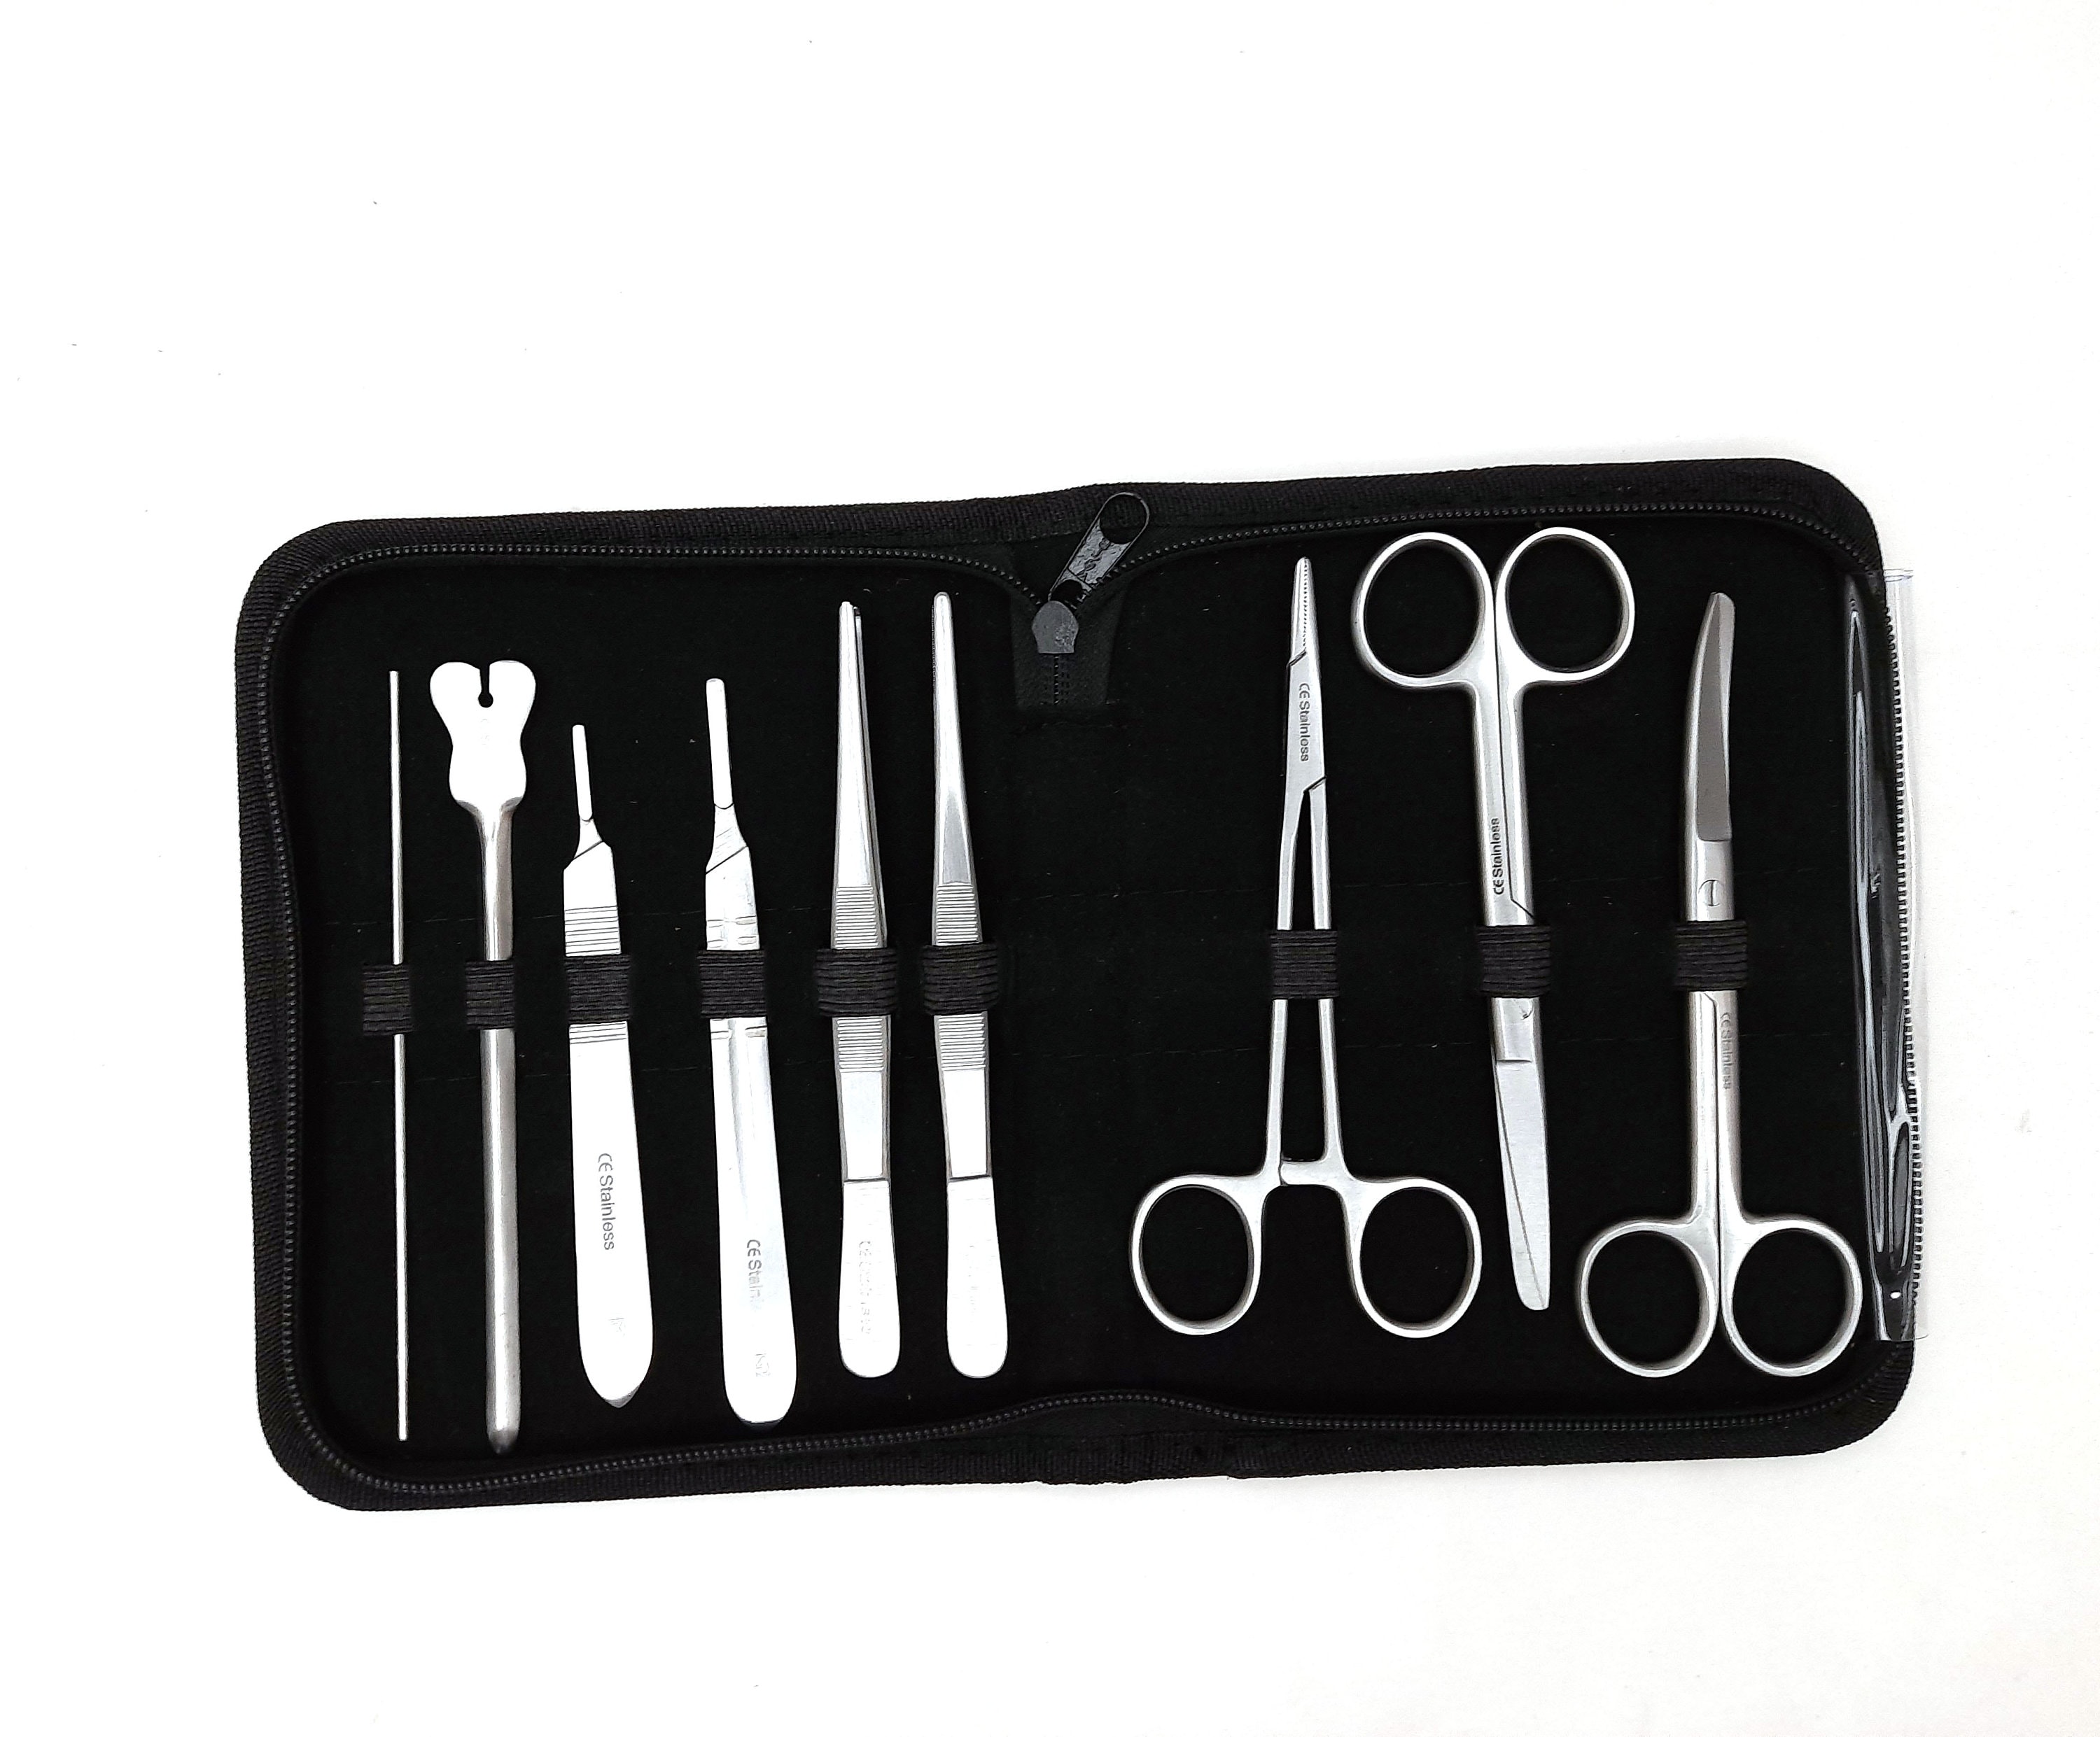 Kit de sutura para estudiantes de medicina, kit completo de práctica de  sutura con almohadilla para la piel, kit de almohadilla de sutura médica  con